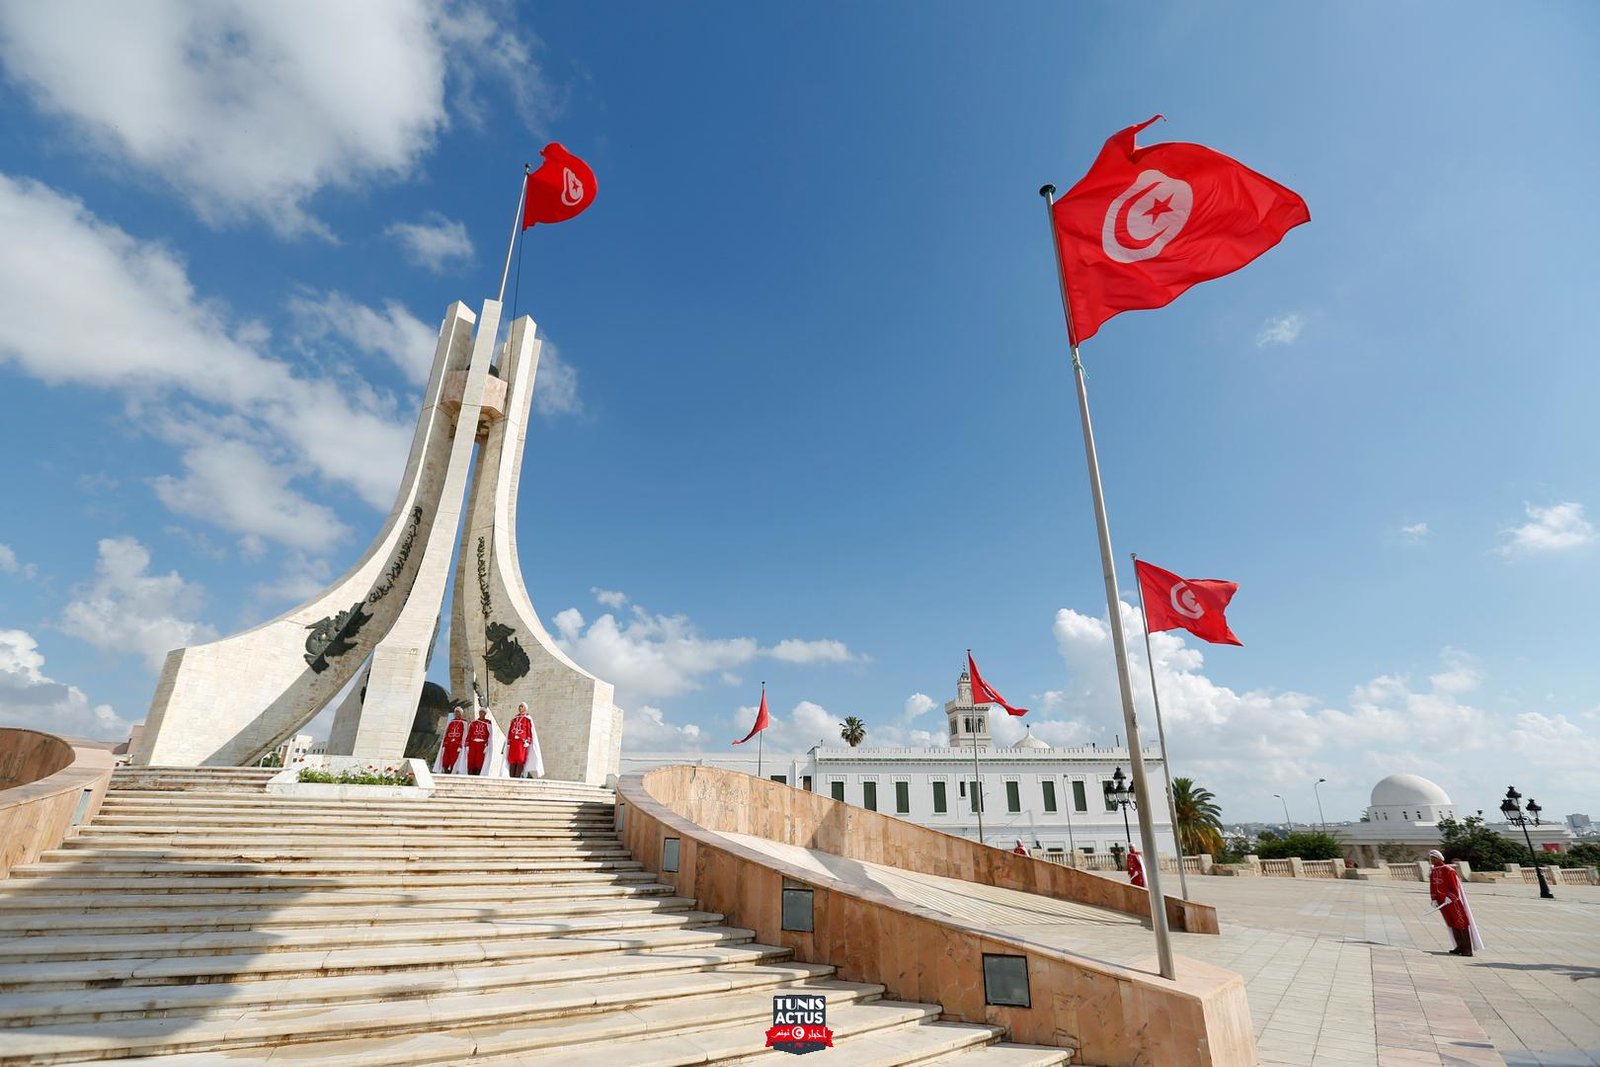 الحزب الدستوري الحر في تونس يقرر رفع شكاوى ضد مسؤولين كبار في الدولة